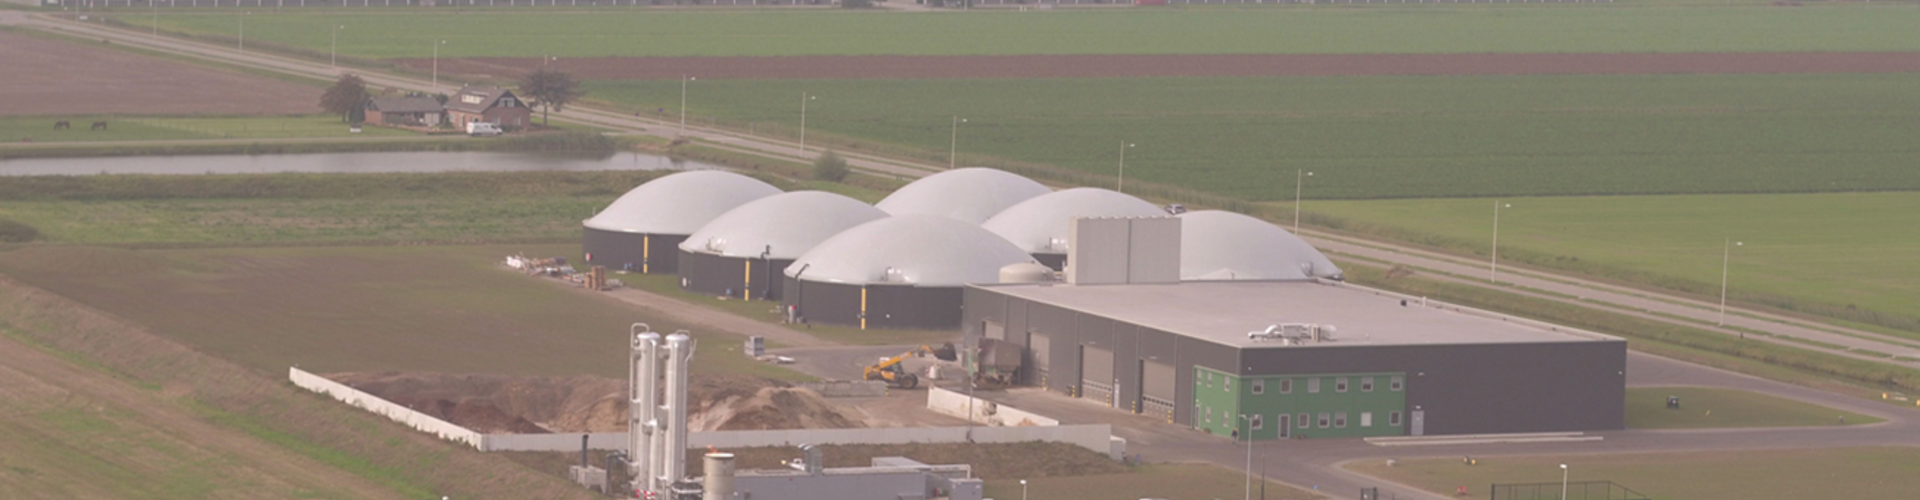 Installation de biogaz Bemmel, Pays-Bas